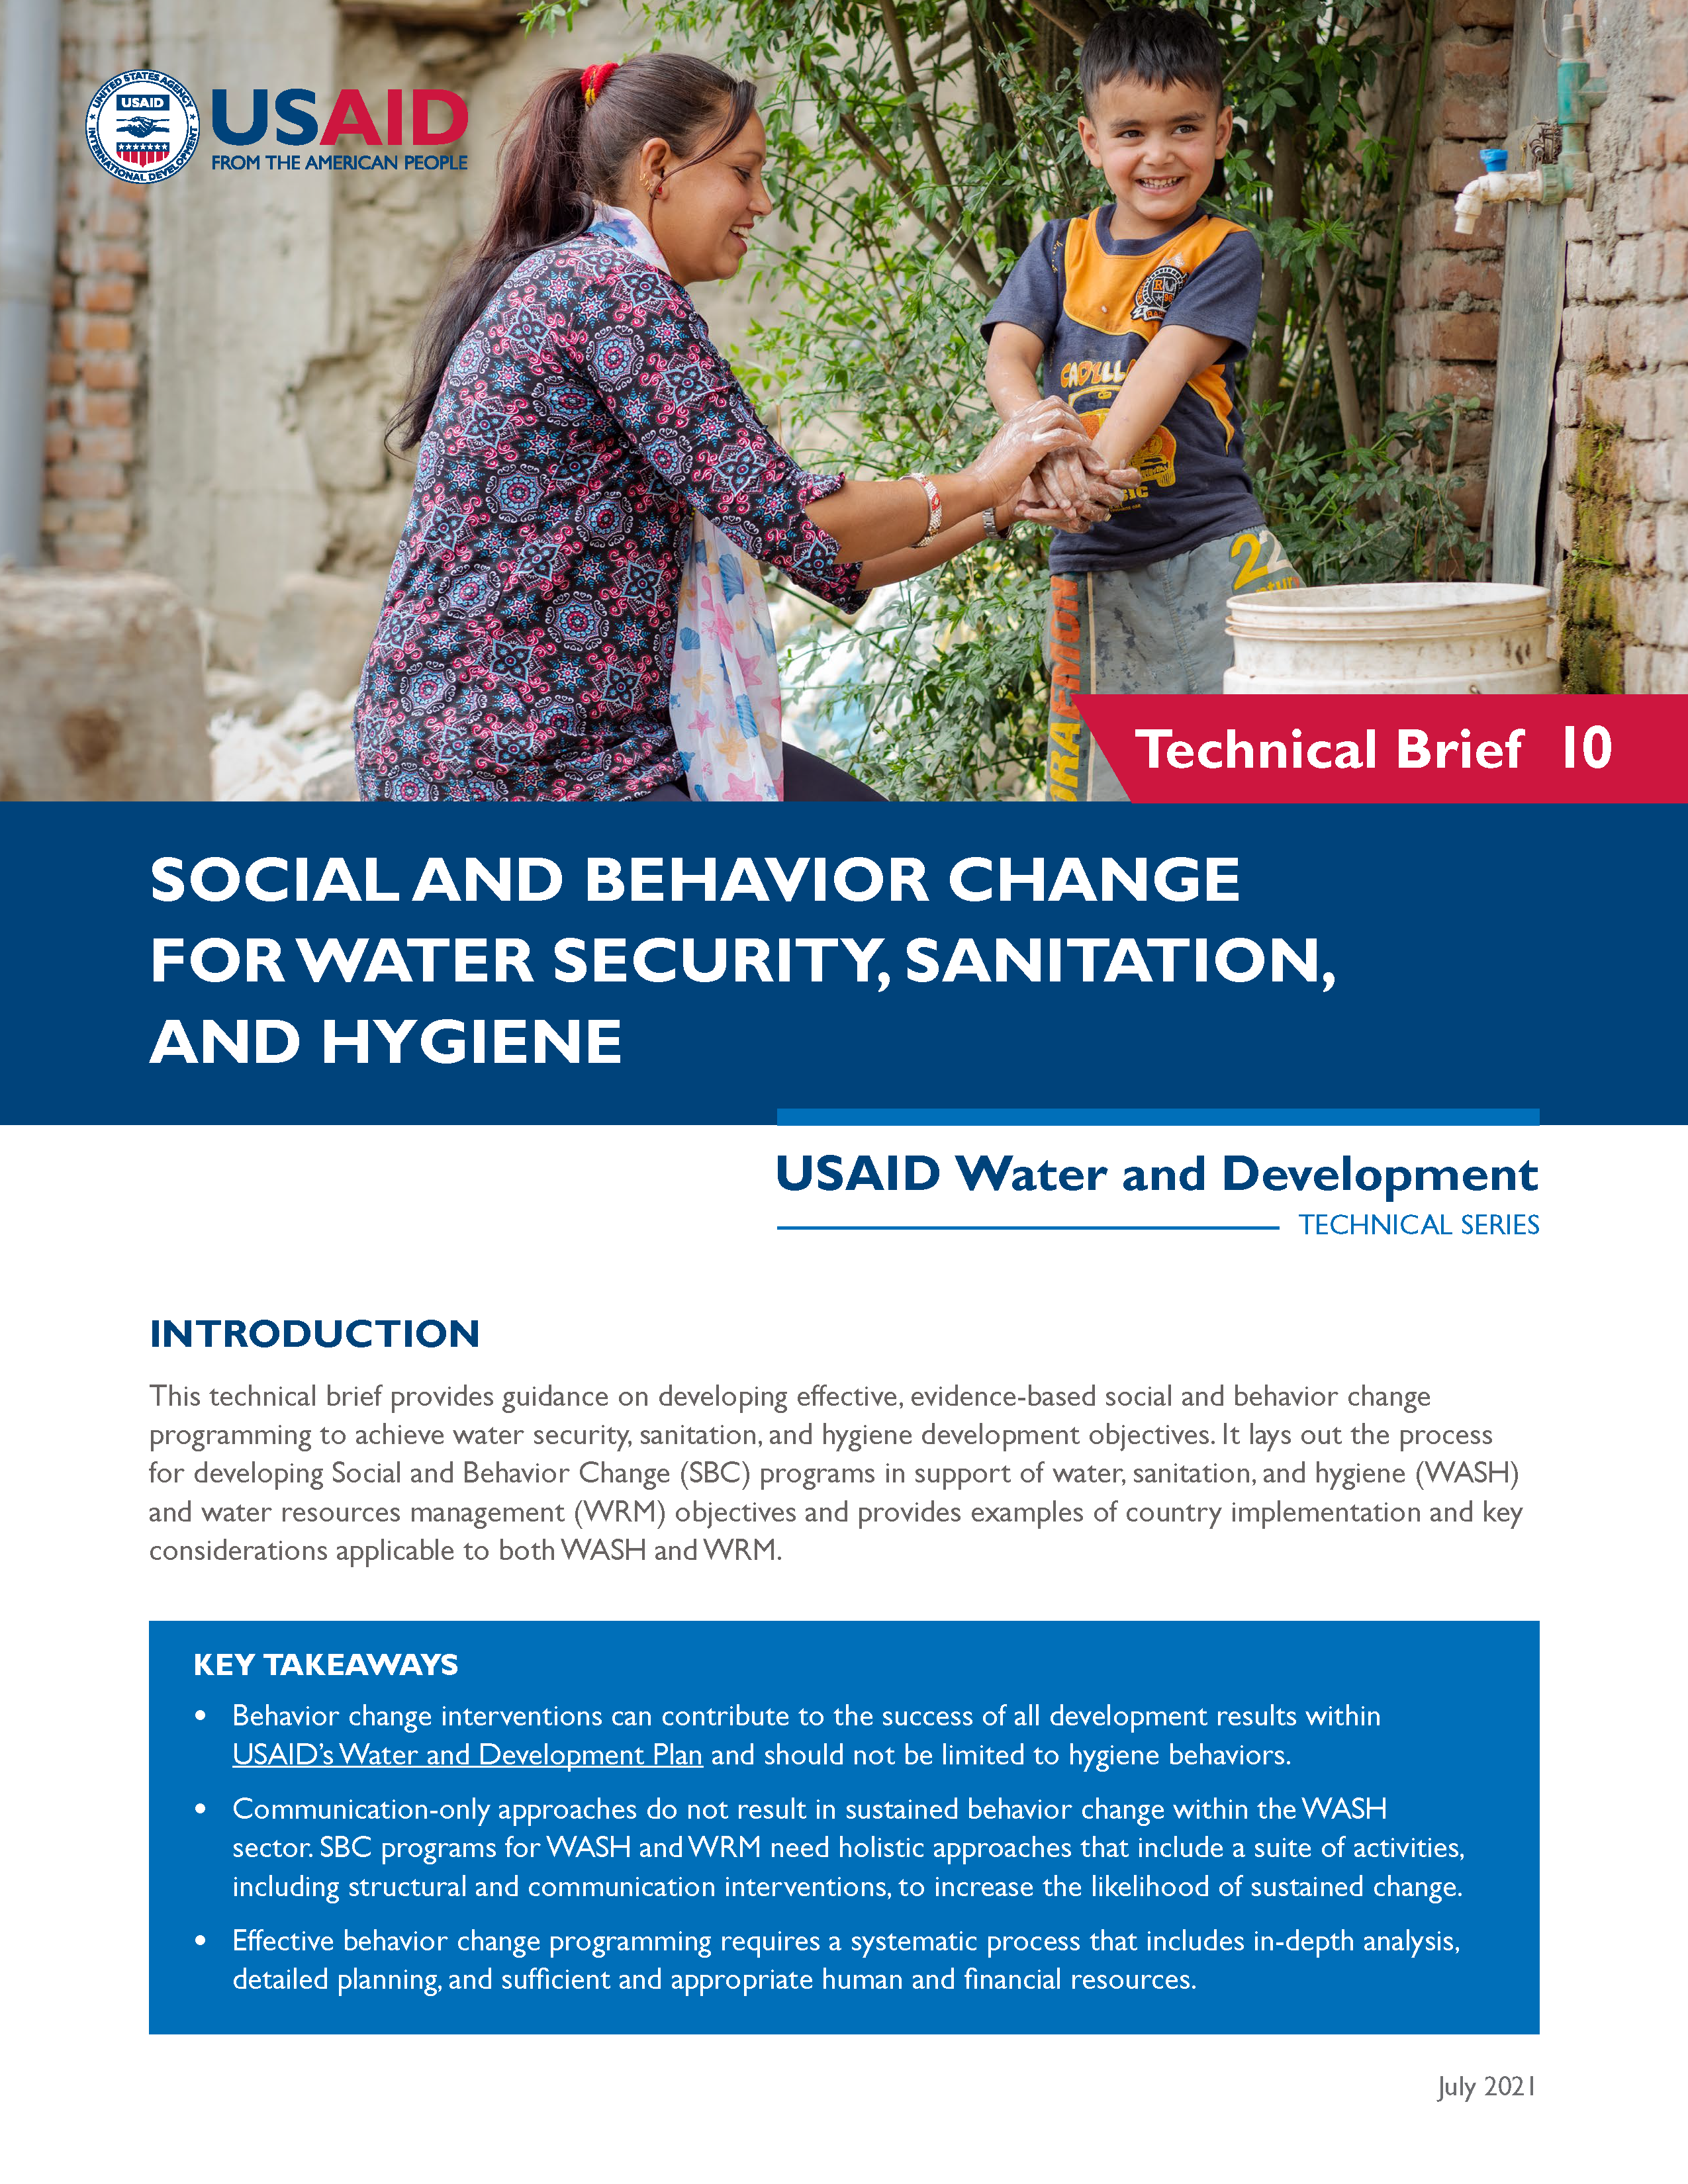 Changement social et comportemental pour la sécurité de l'eau, l'assainissement et l'hygiène